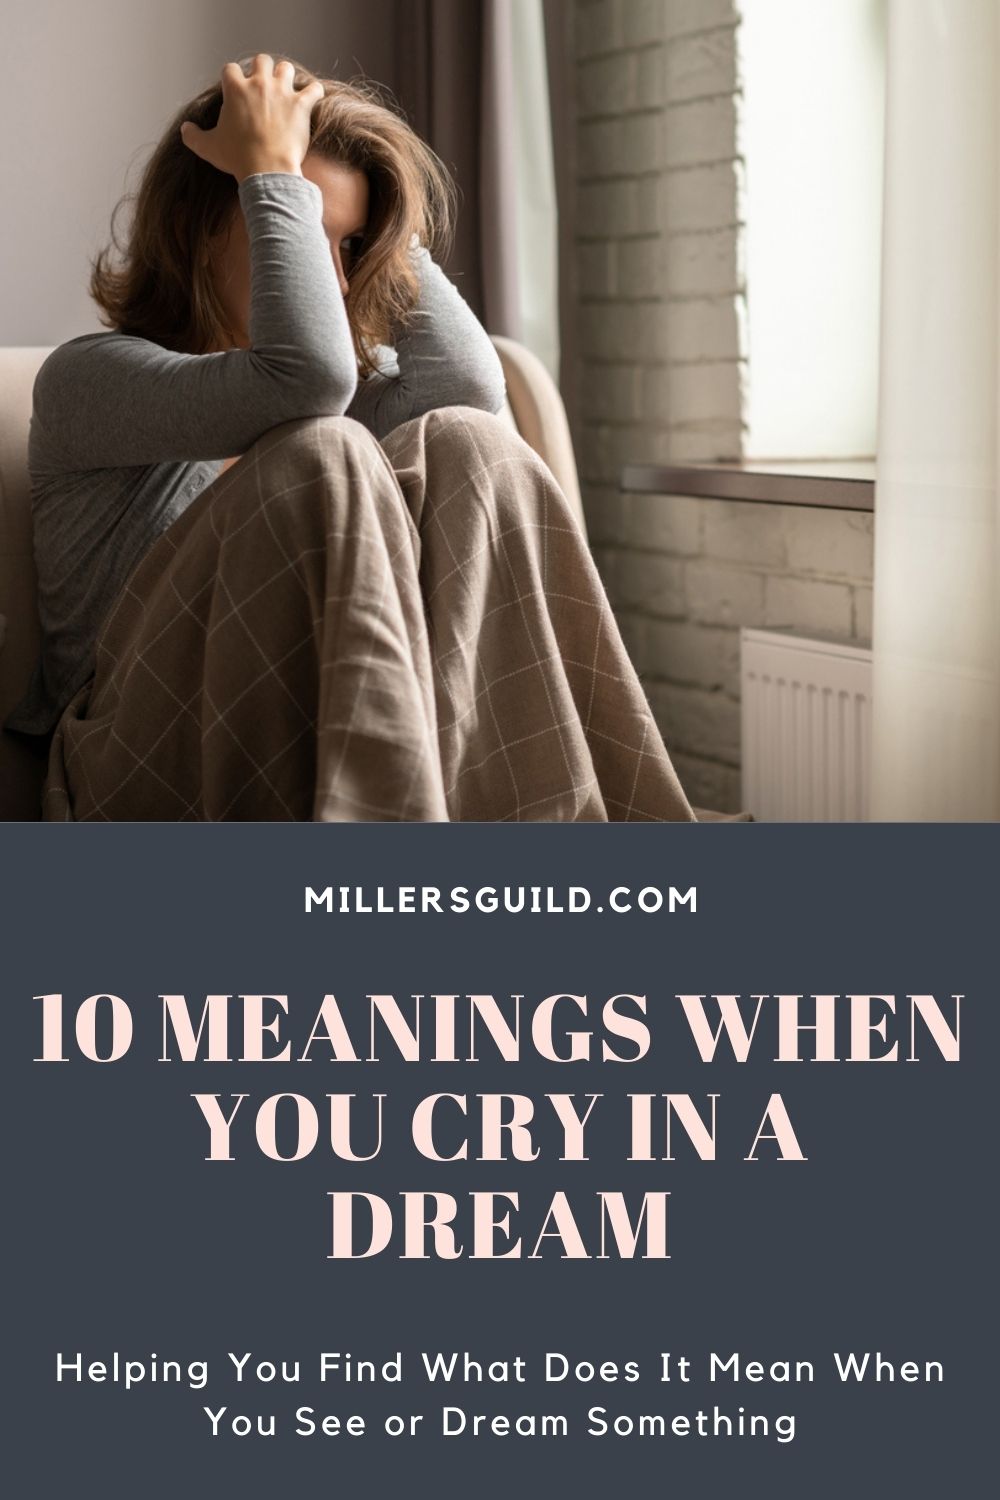 सपने में रोने का मतलब क्या होता है?